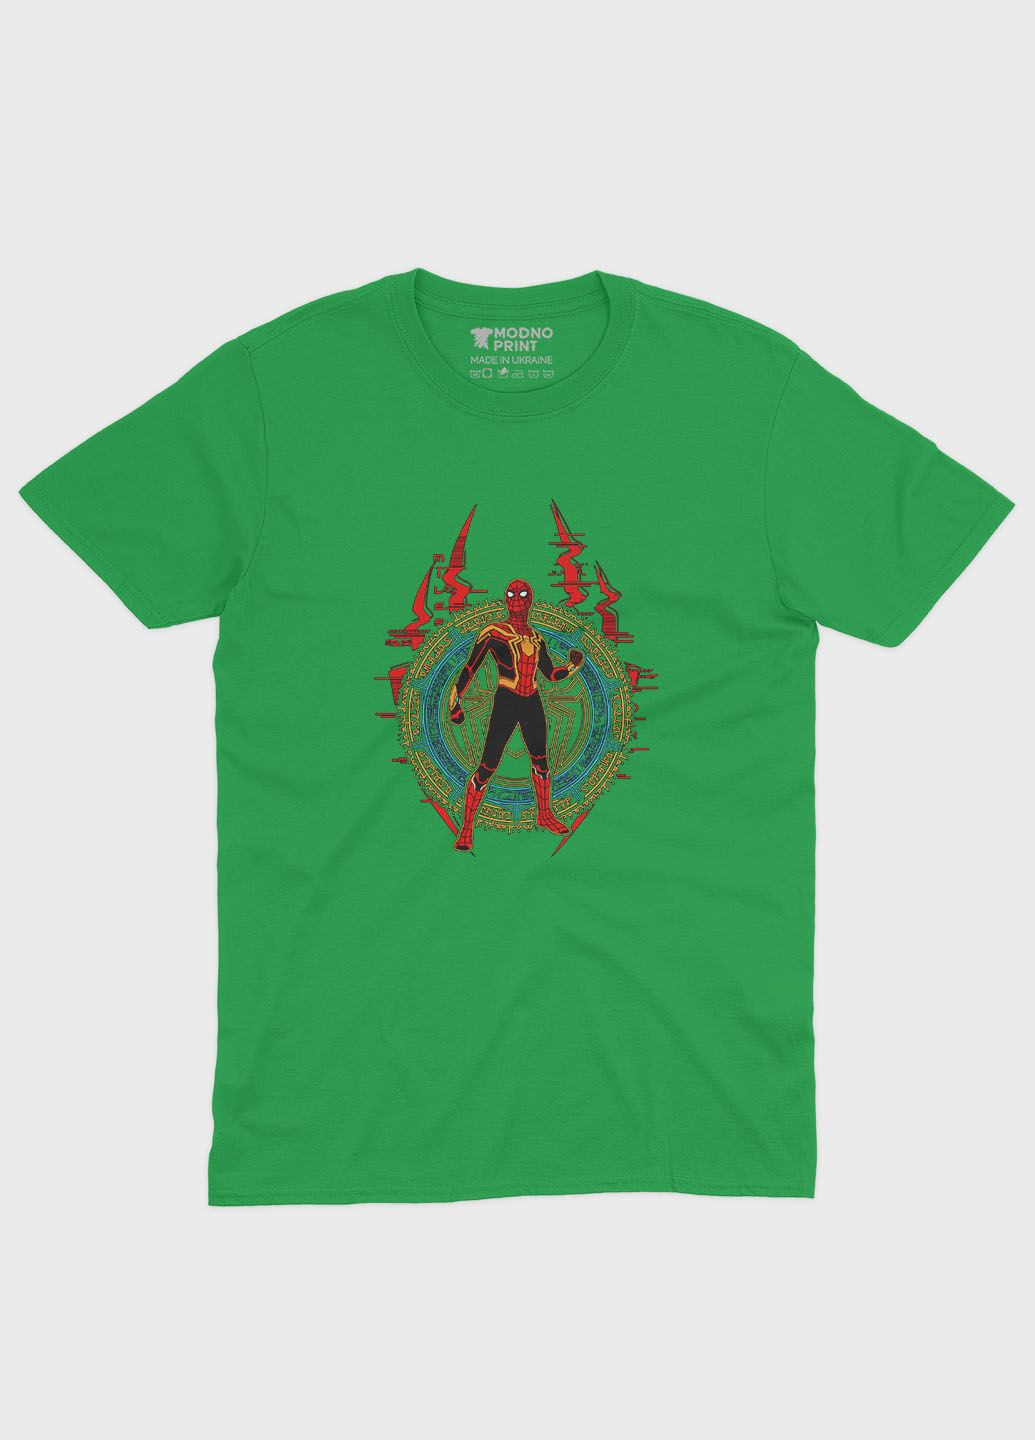 Зеленая демисезонная футболка для девочки с принтом супергероя - человек-паук (ts001-1-keg-006-014-011-g) Modno